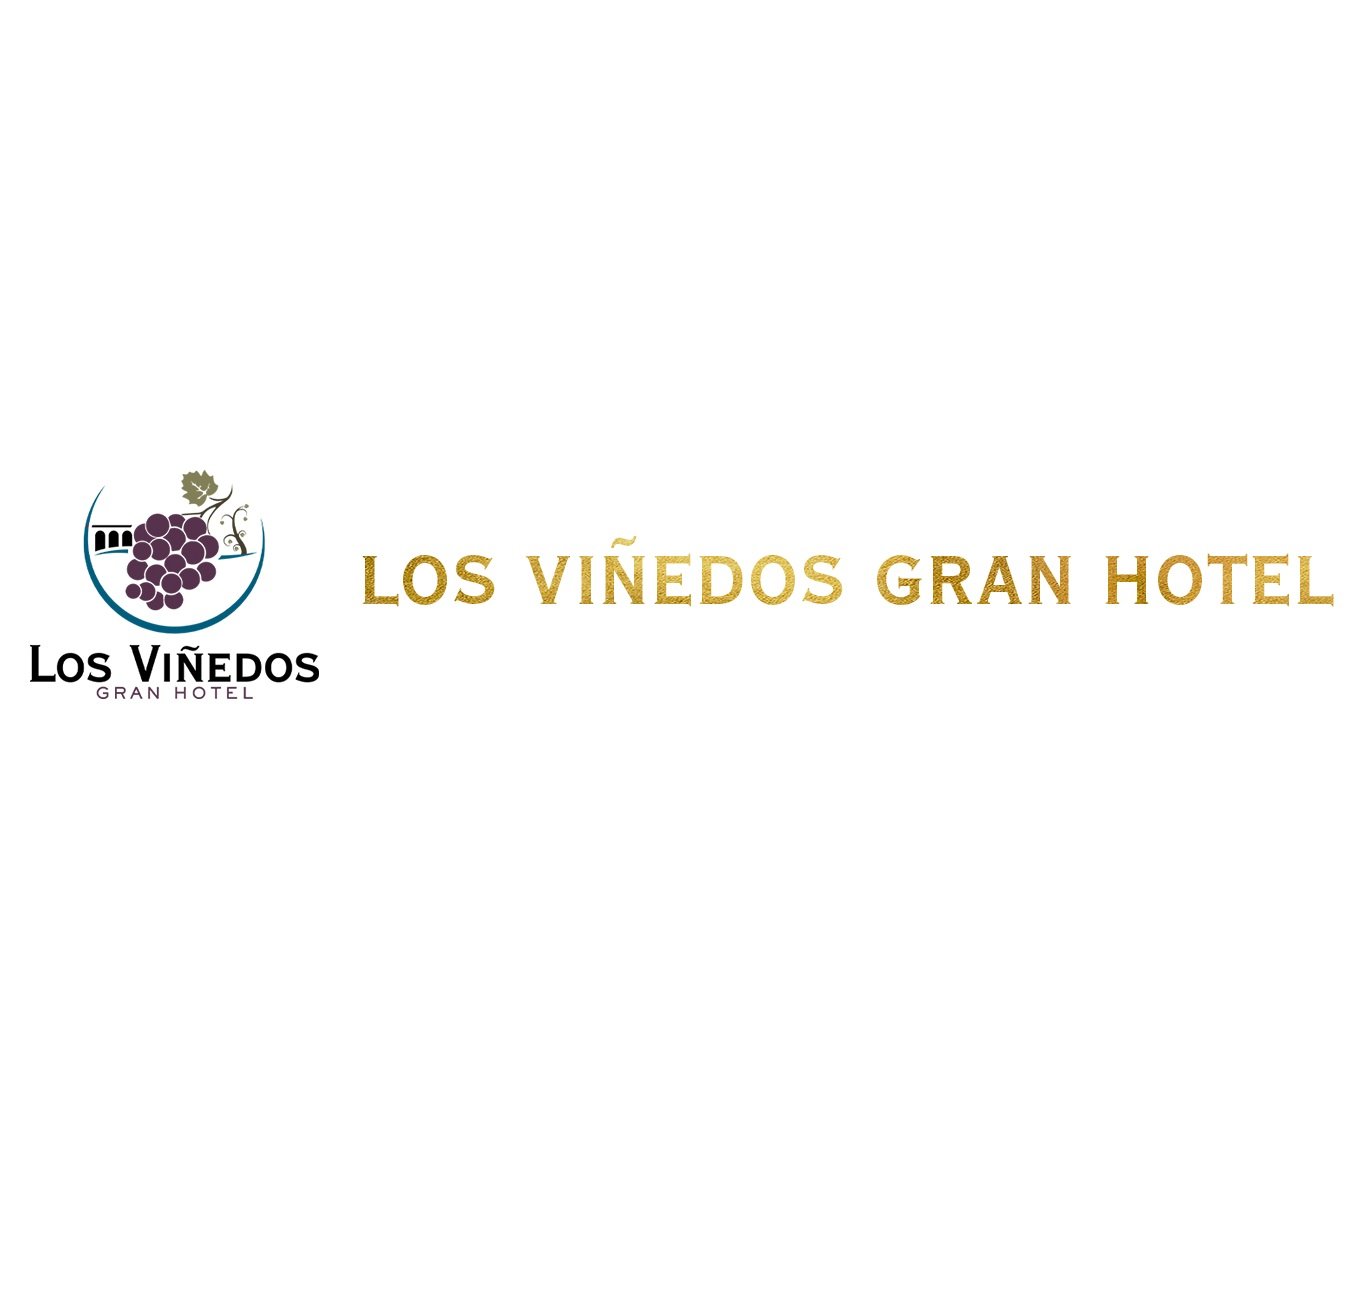 Los Vinedos Gran Hotel